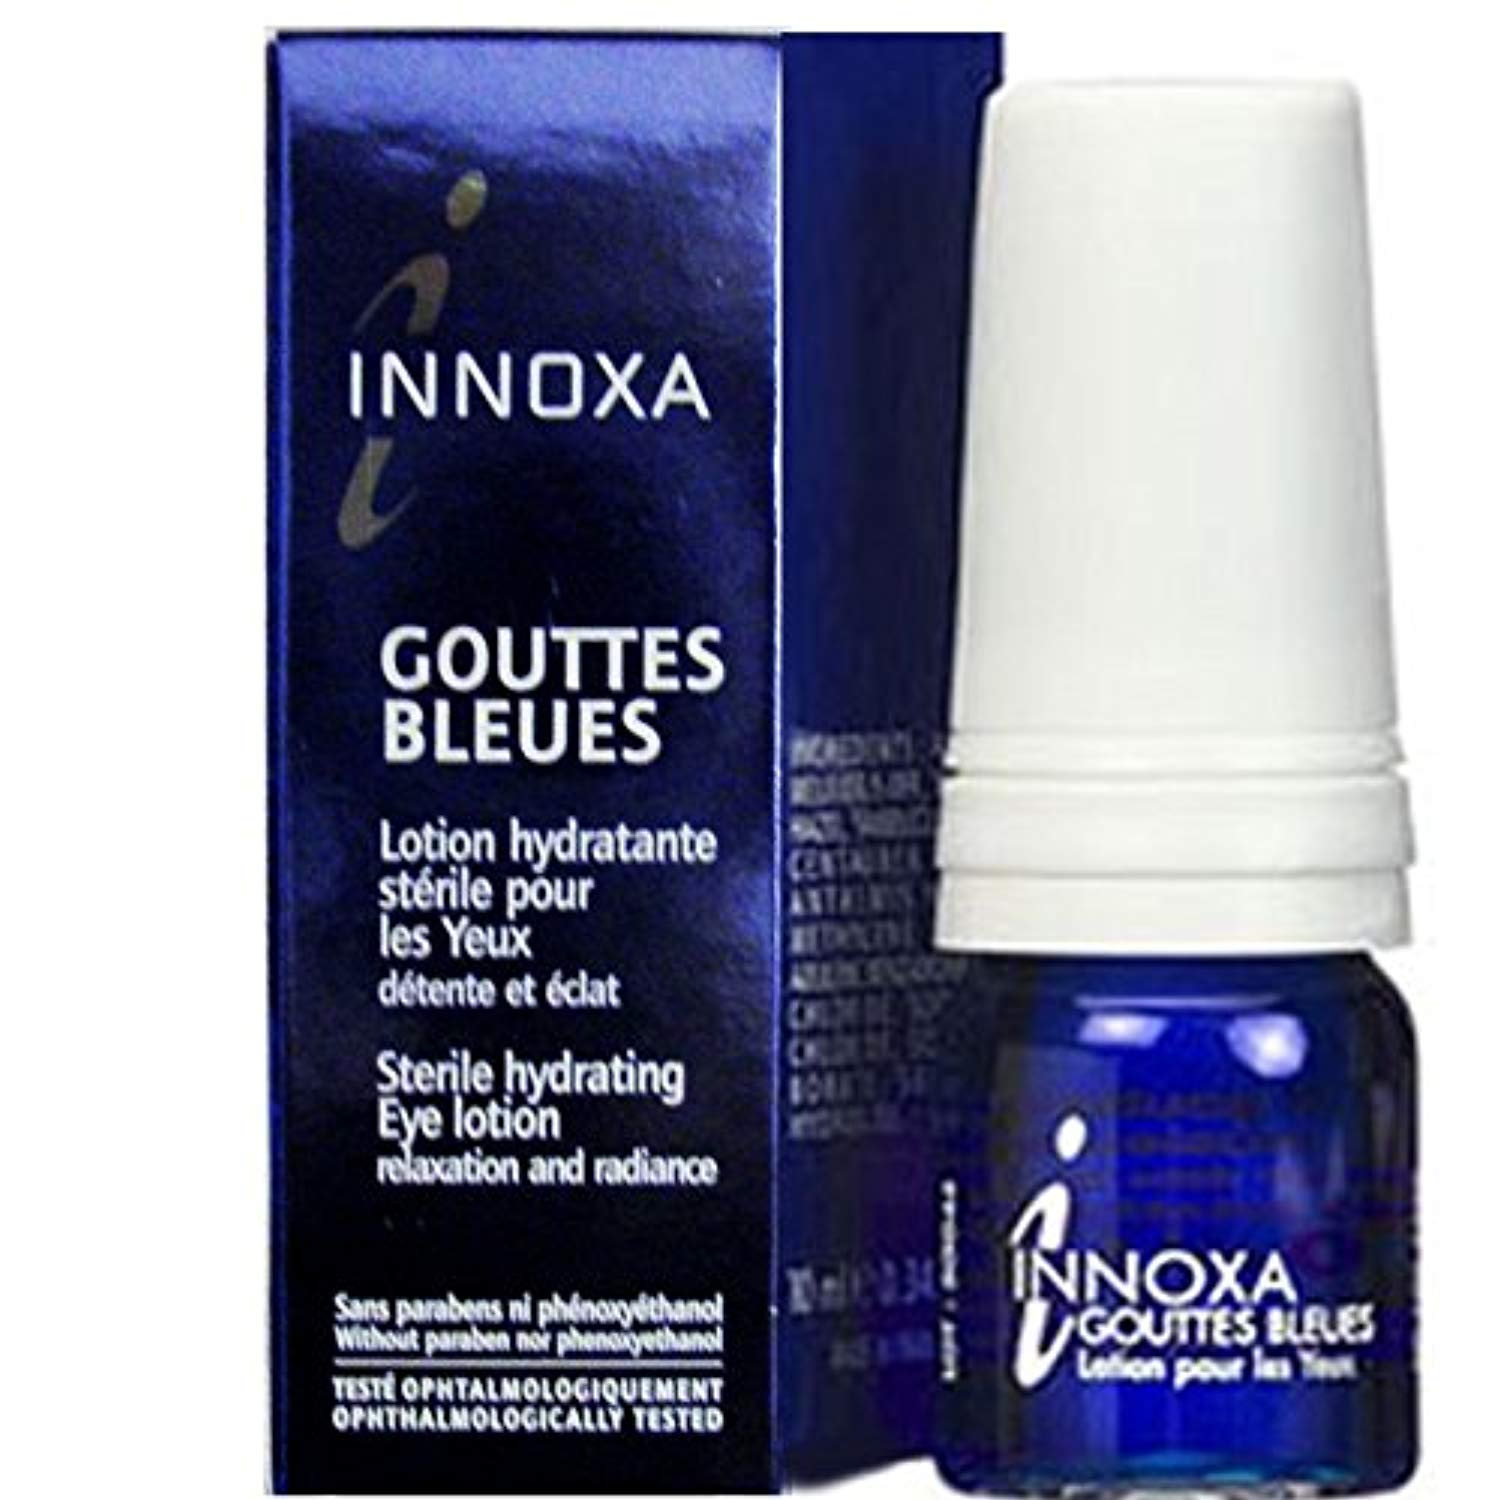 Les célèbres gouttes bleues d'Innoxa sont de retour avec une